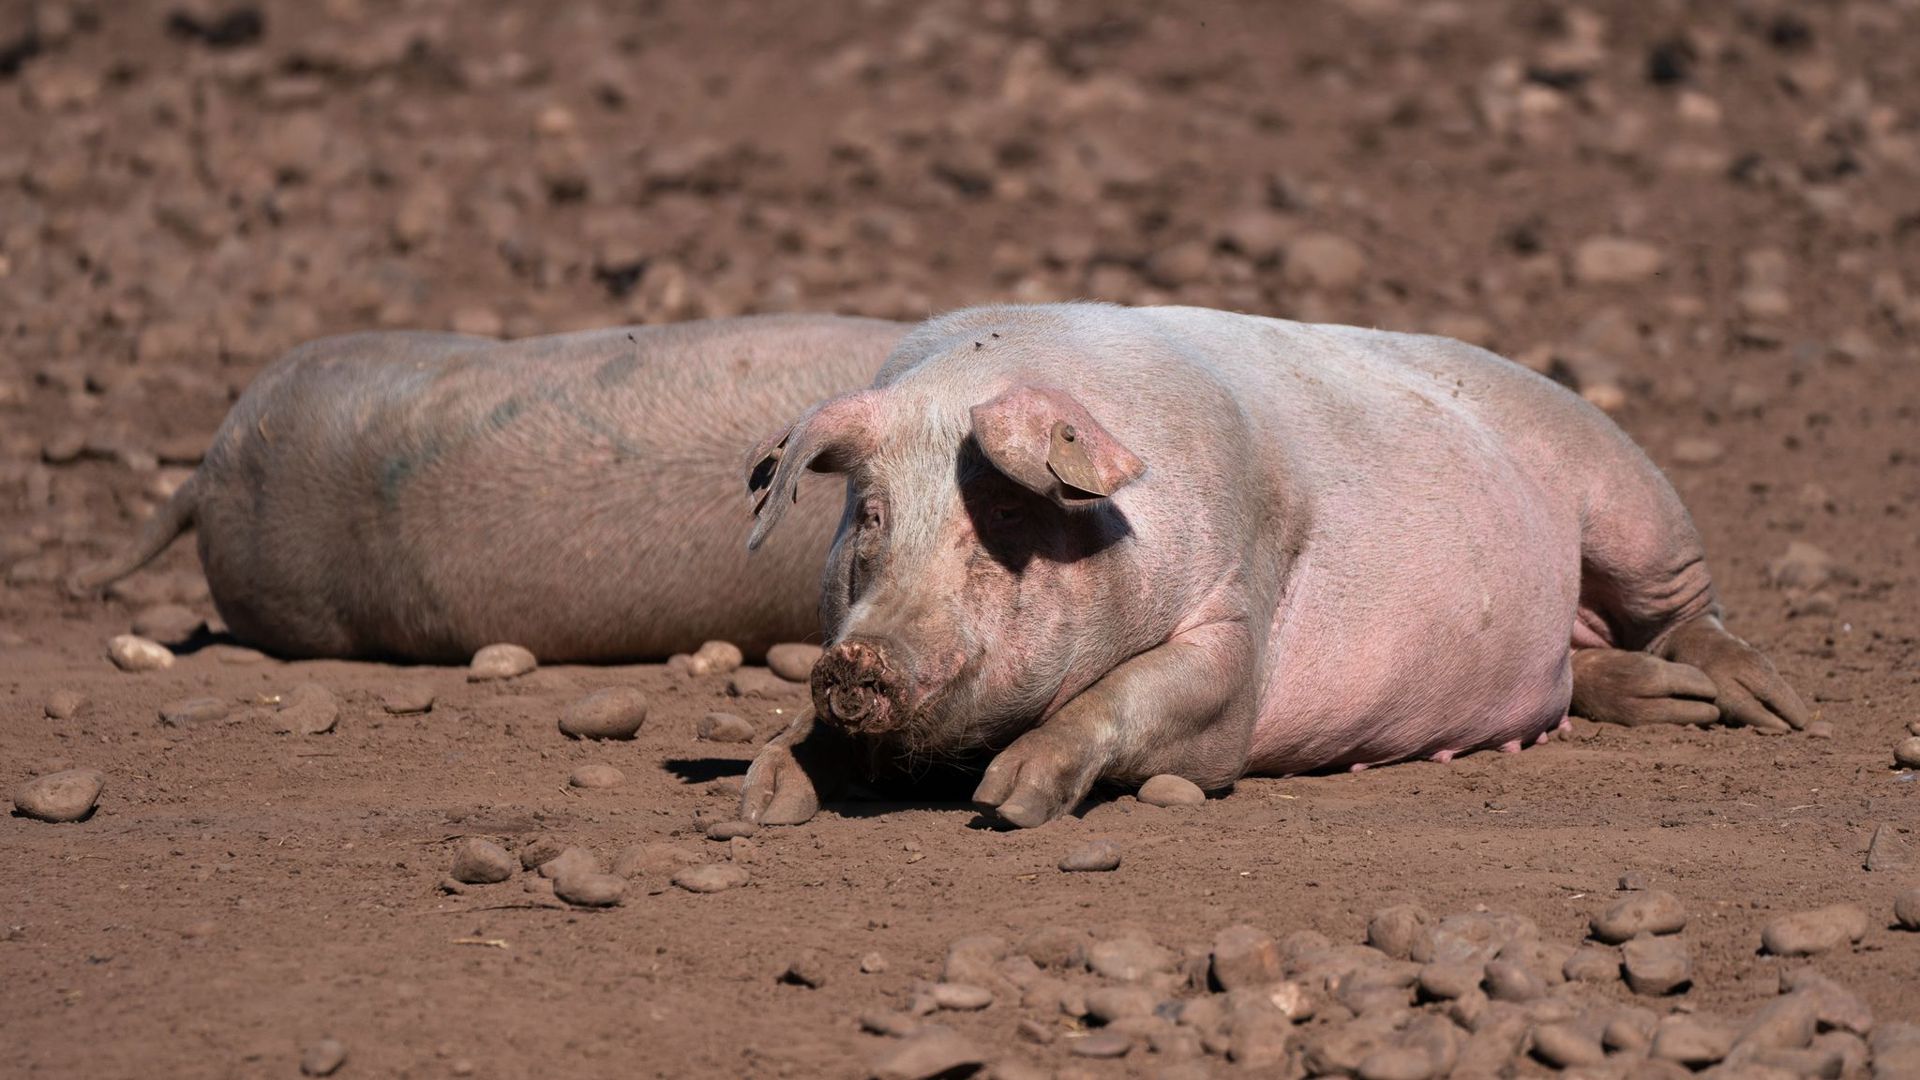 Schweine auf einem Bauernhof in Staffordshire. Wegen einer CO2-Krise in Großbritannien drohen nach Ansicht der Lebensmittelindustrie bald akute Versorgungsprobleme in Supermärkten und Gastronomie.